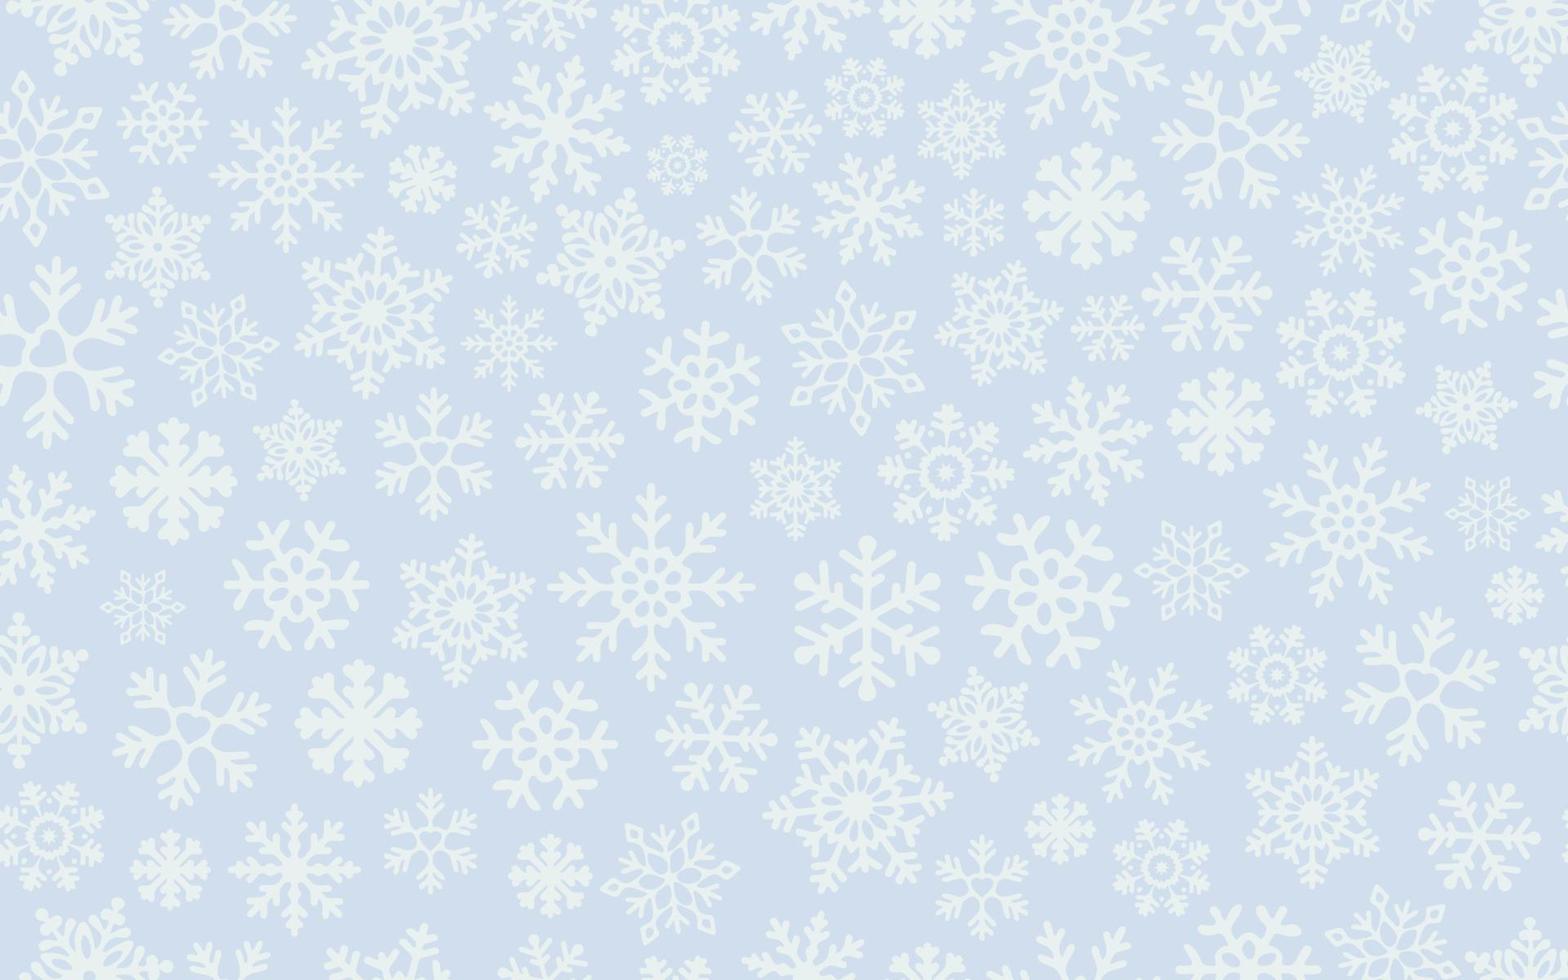 flocos de neve leves sobre fundo azul. padrão sem emenda de vetor para replicação contínua. floco de neve caindo de natal no pano de fundo azul. conceito de férias de inverno.